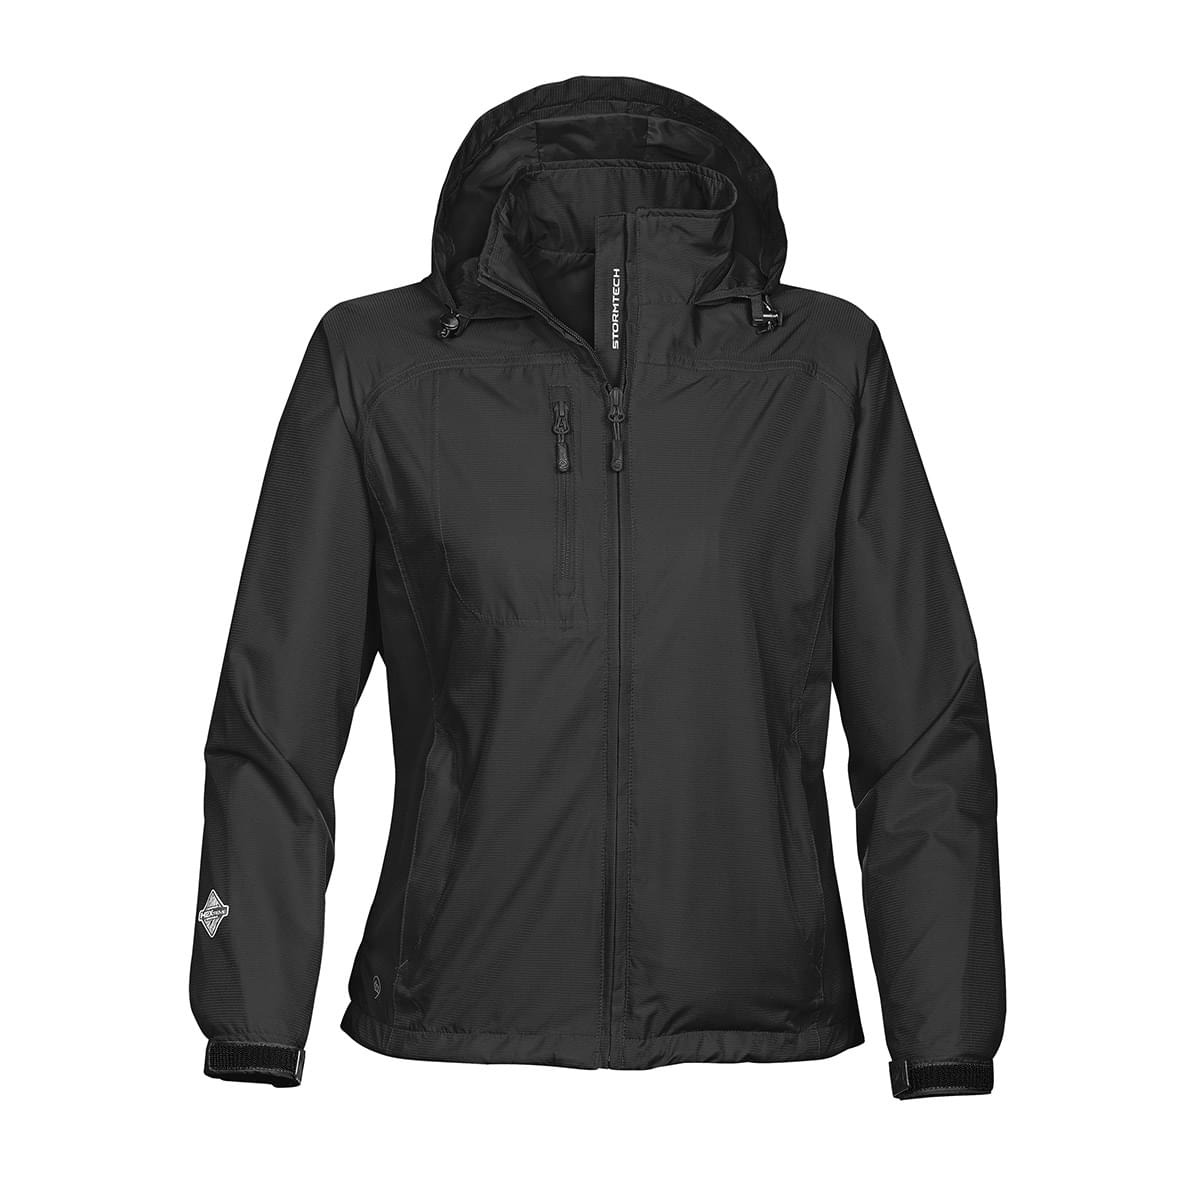 Women's Waterproof Jackets - Stormtech Canada Retail